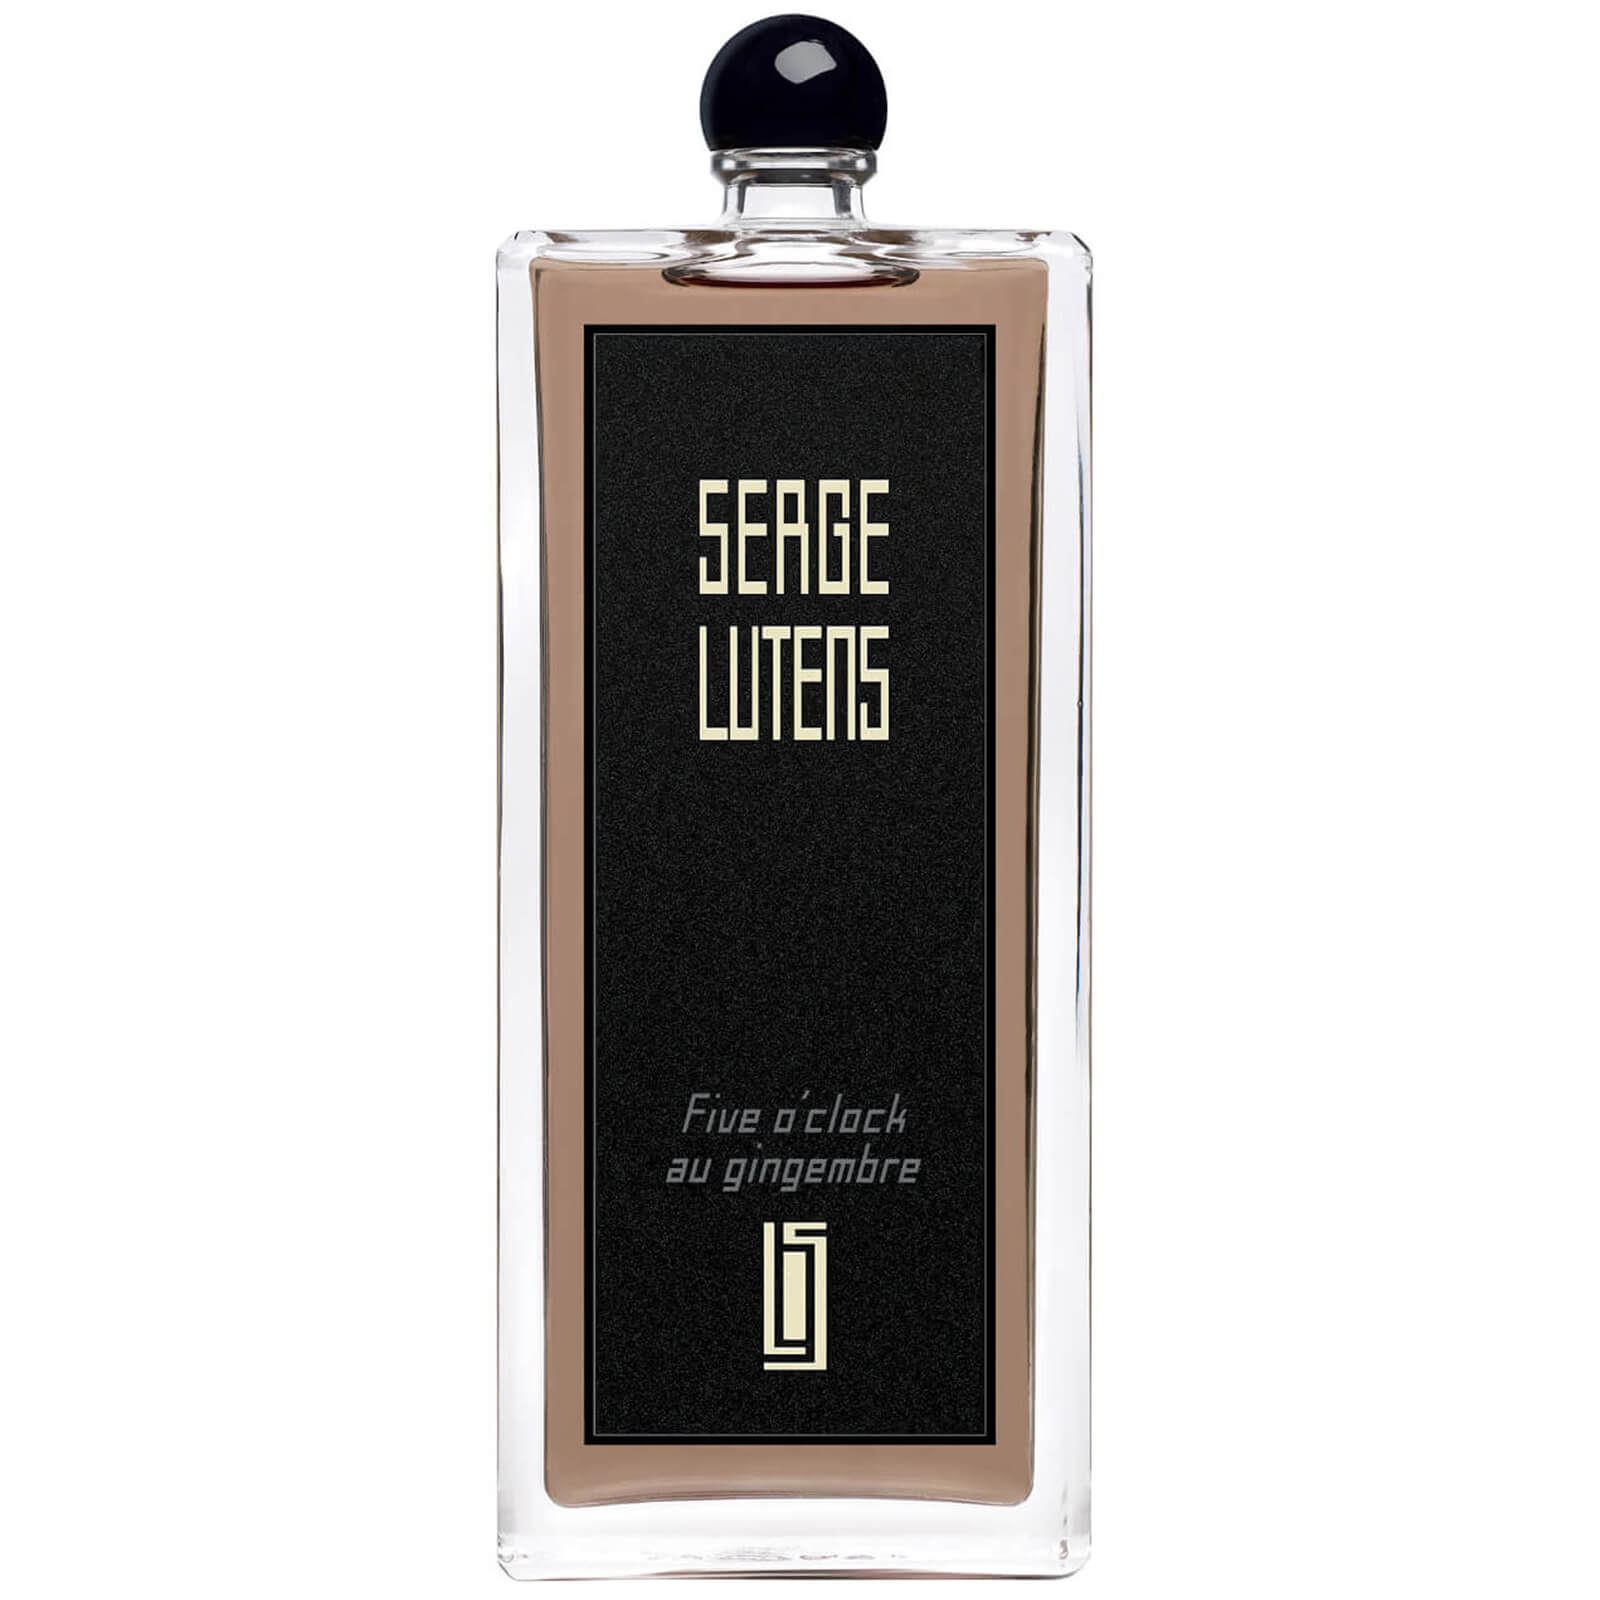 Photos - Women's Fragrance Serge Lutens Five o'clock au Gingembre Eau de Parfum - 100ml 36112362155 